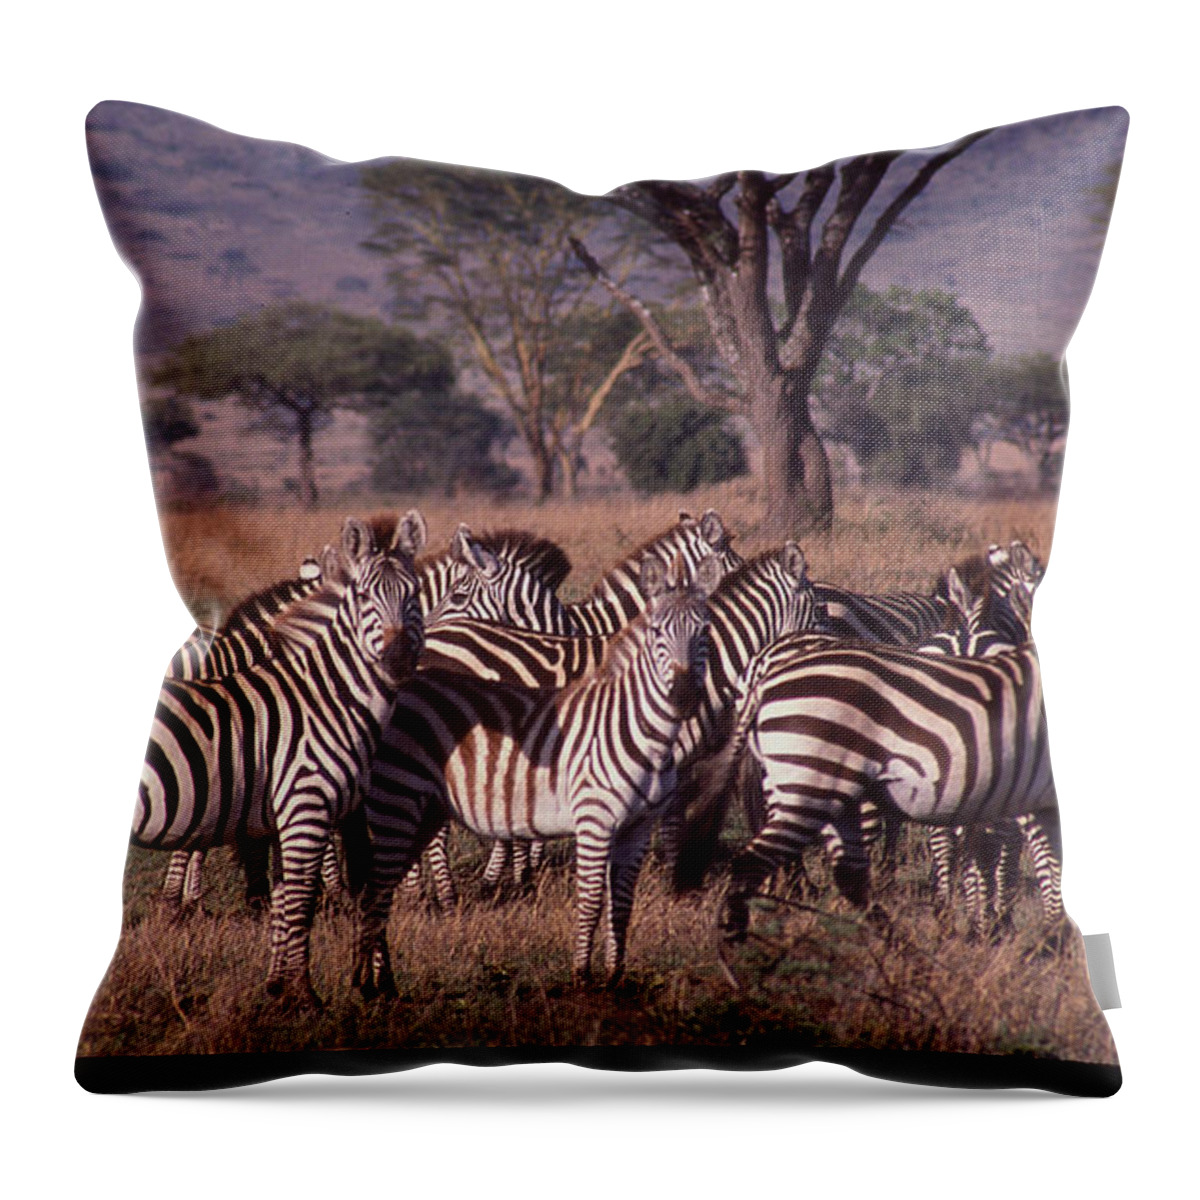 Africa Throw Pillow featuring the photograph Zebra Herd by Russ Considine